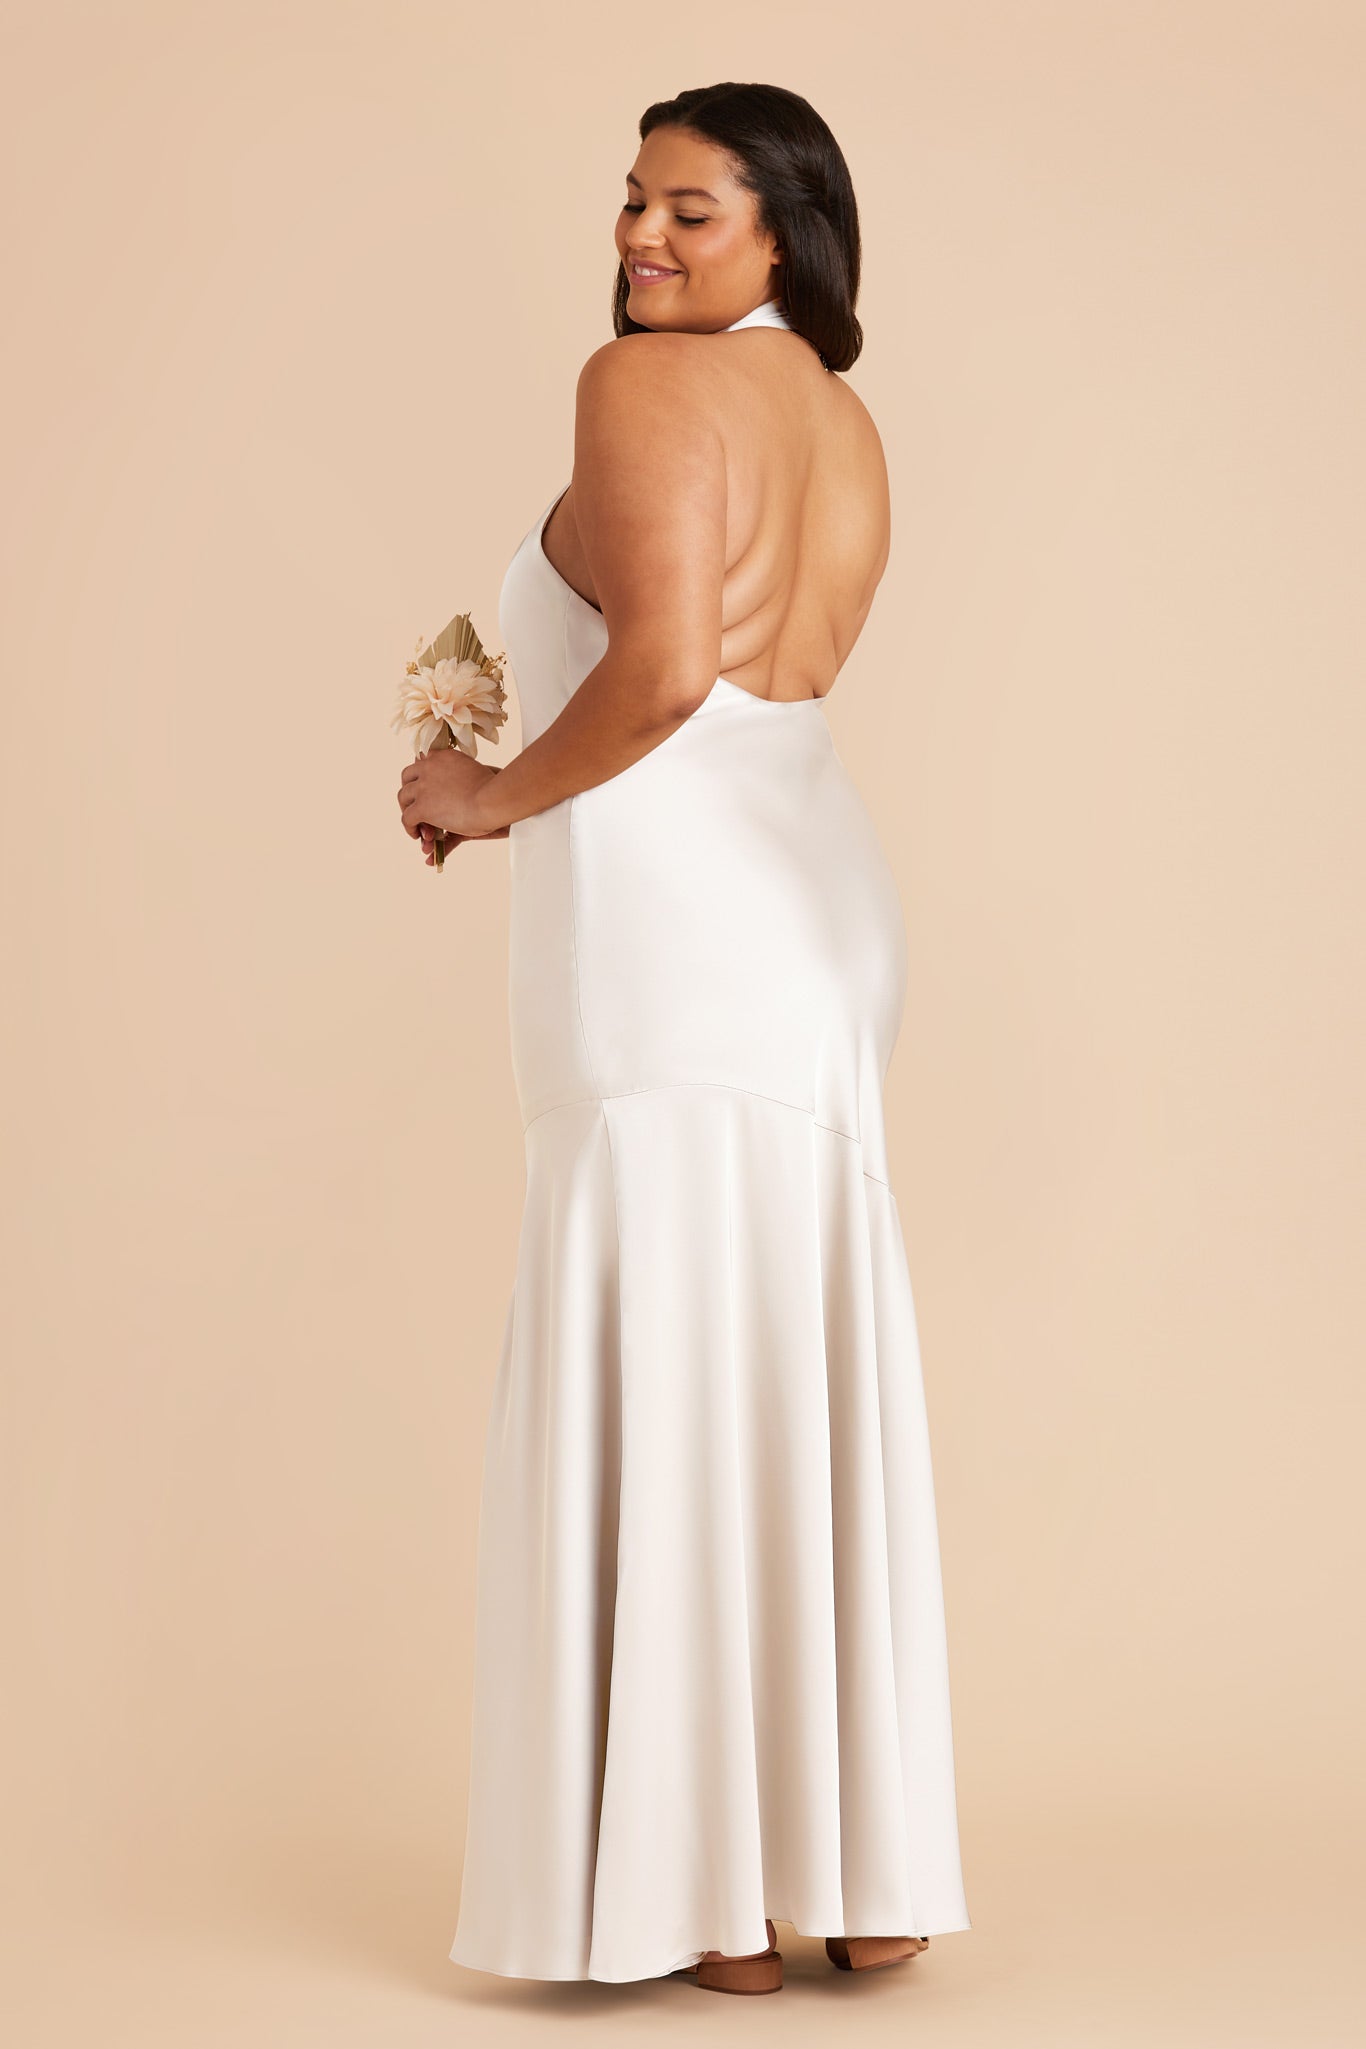 White Stephanie Matte Satin Dress by Birdy Grey